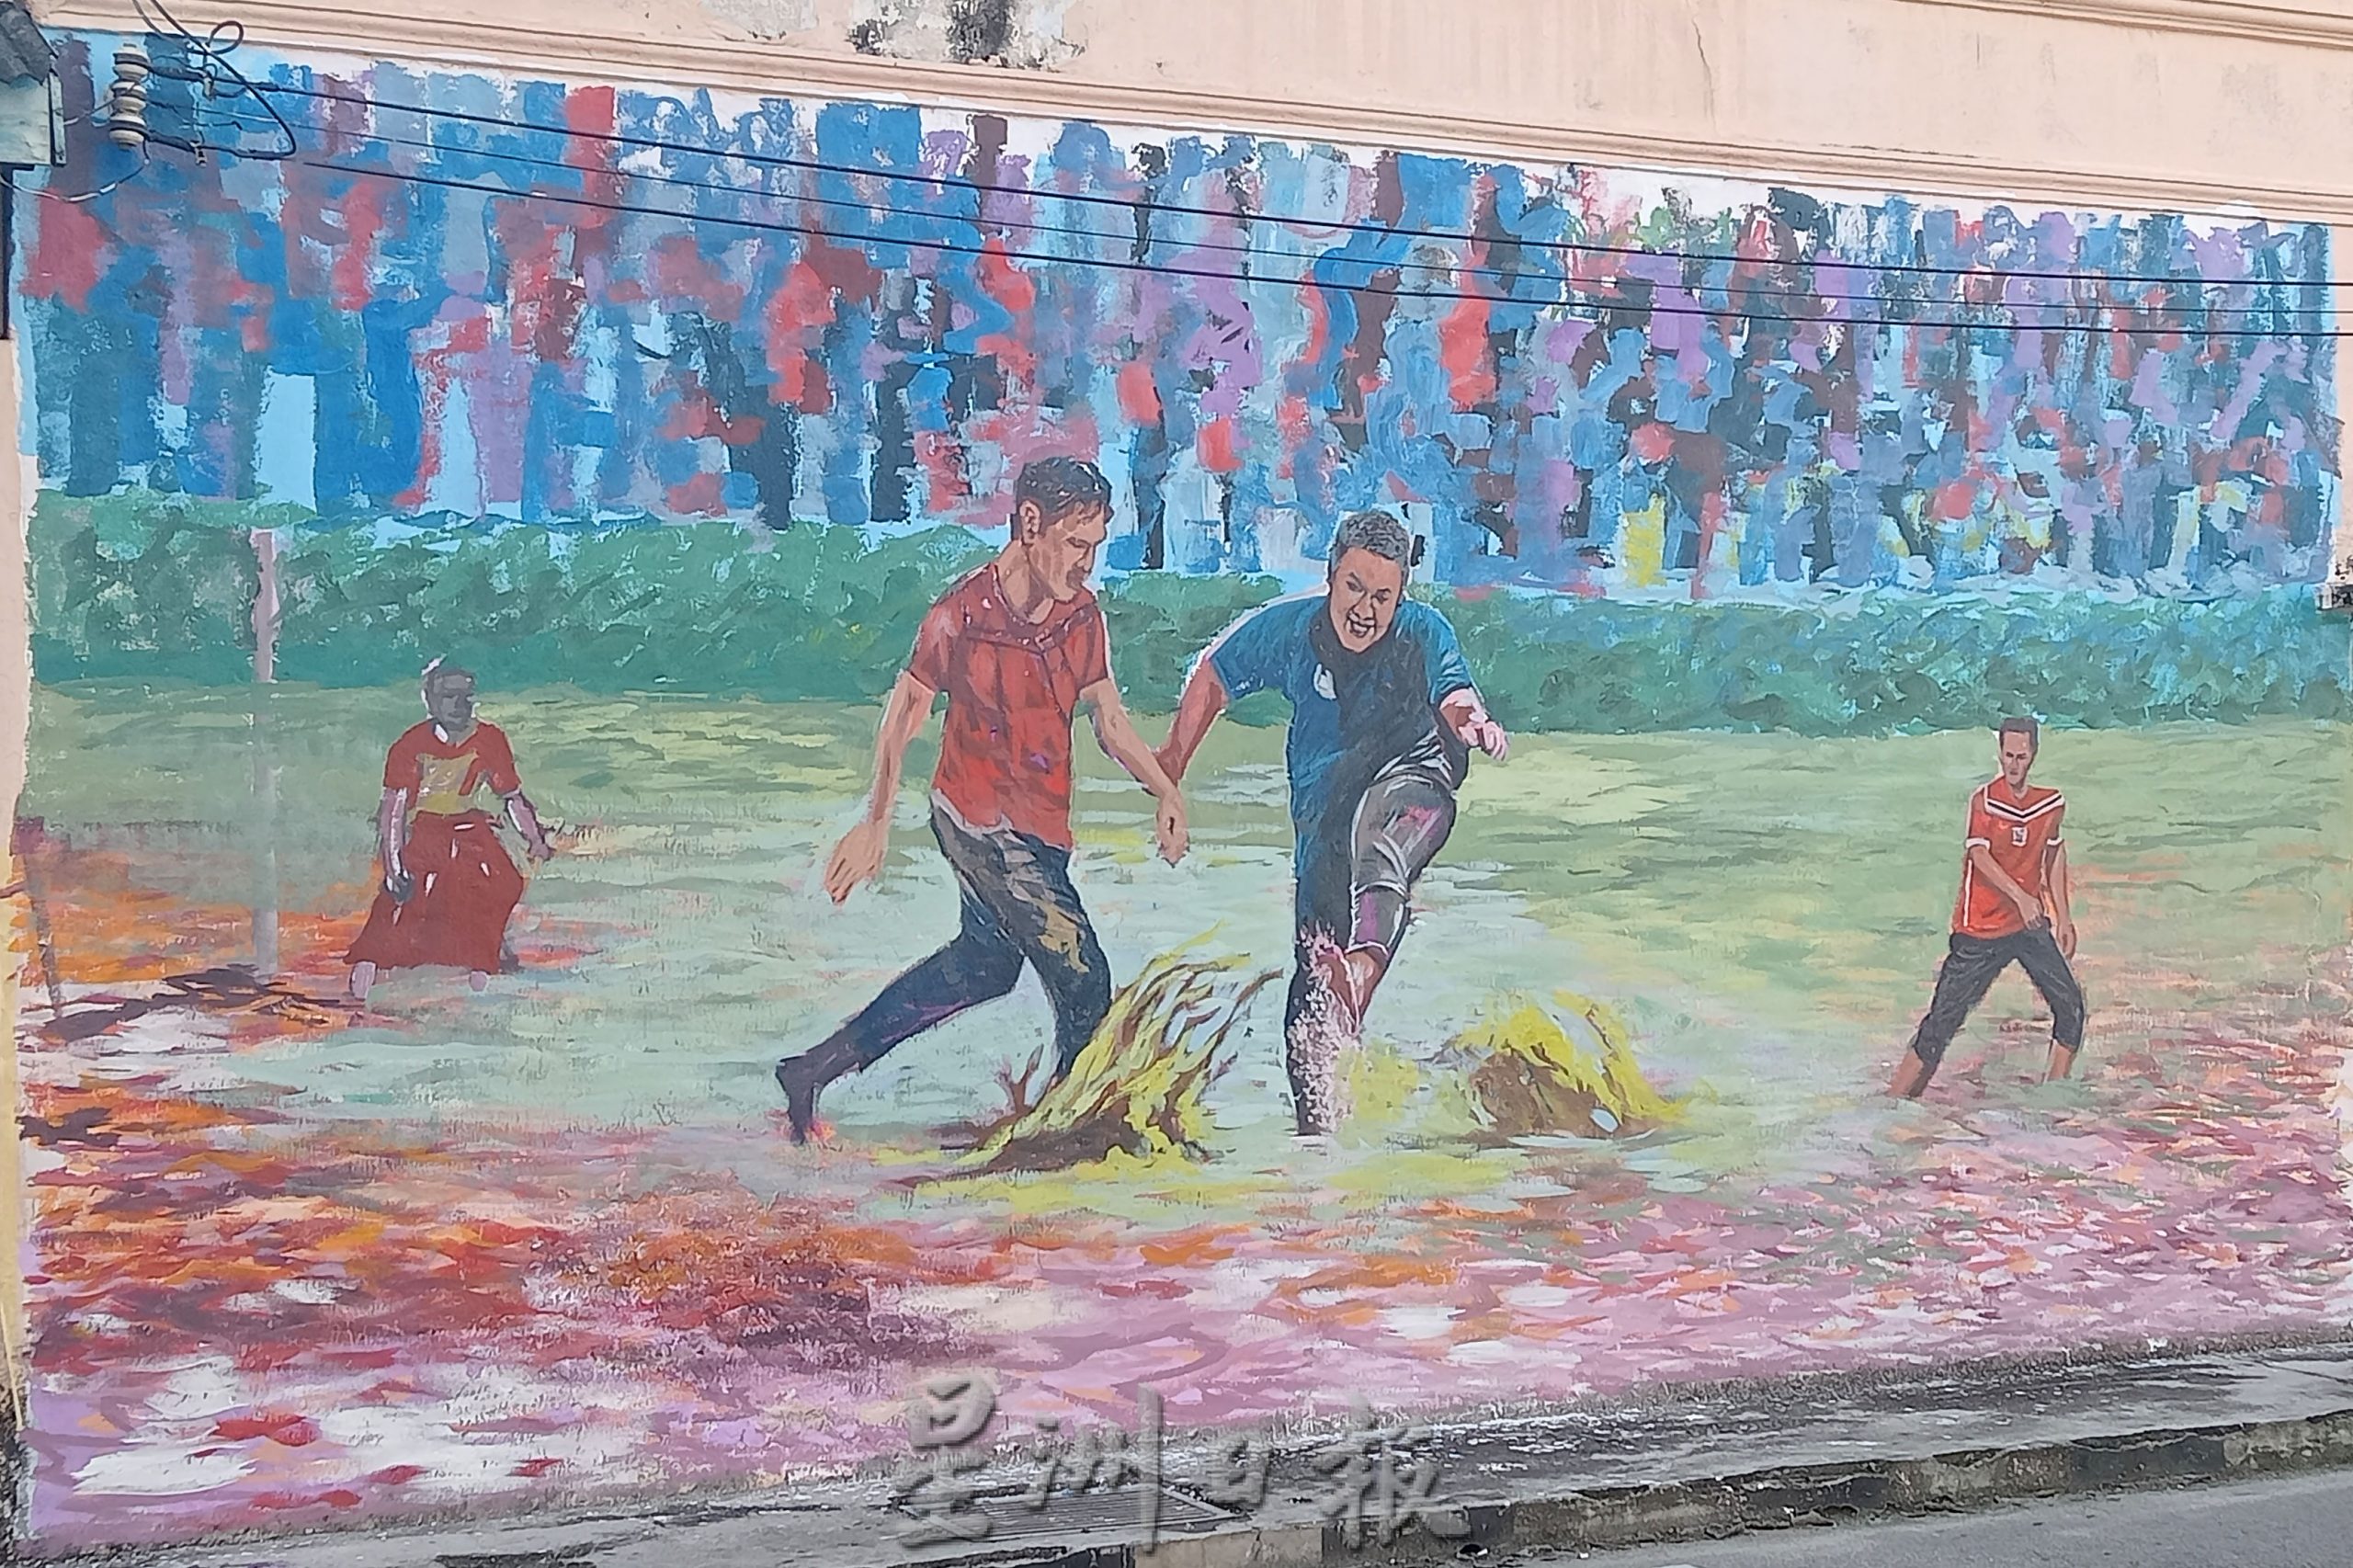 庇朥/ 瓜拉庇朥市区小巷及老店建筑物进行绘画壁画，使社区增添色彩。